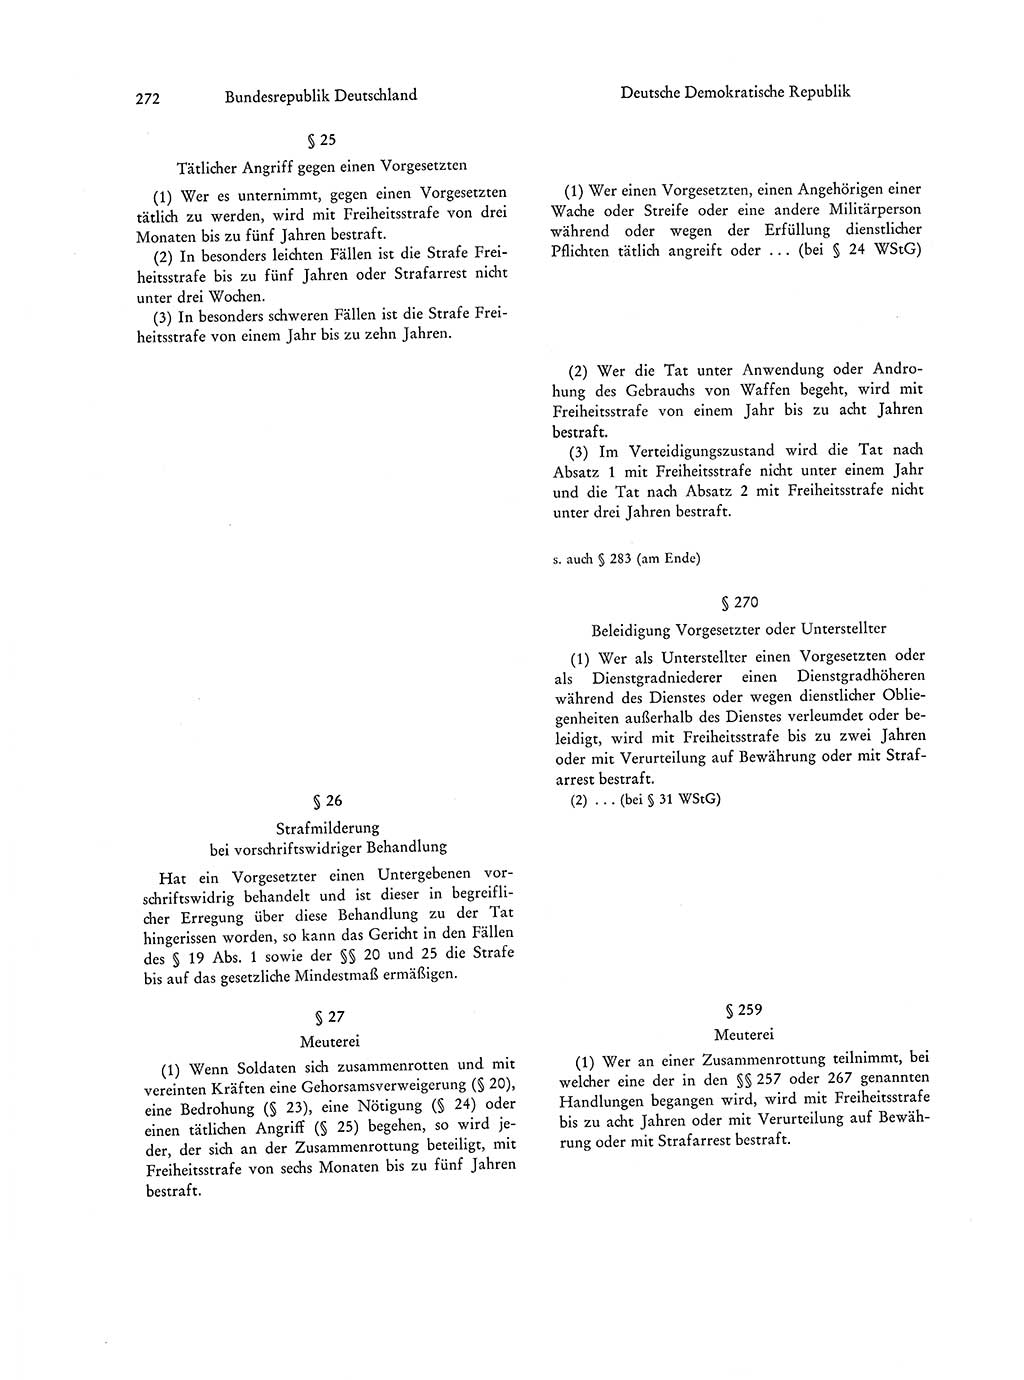 Strafgesetzgebung in Deutschland [Bundesrepublik Deutschland (BRD) und Deutsche Demokratische Republik (DDR)] 1972, Seite 272 (Str.-Ges. Dtl. StGB BRD DDR 1972, S. 272)